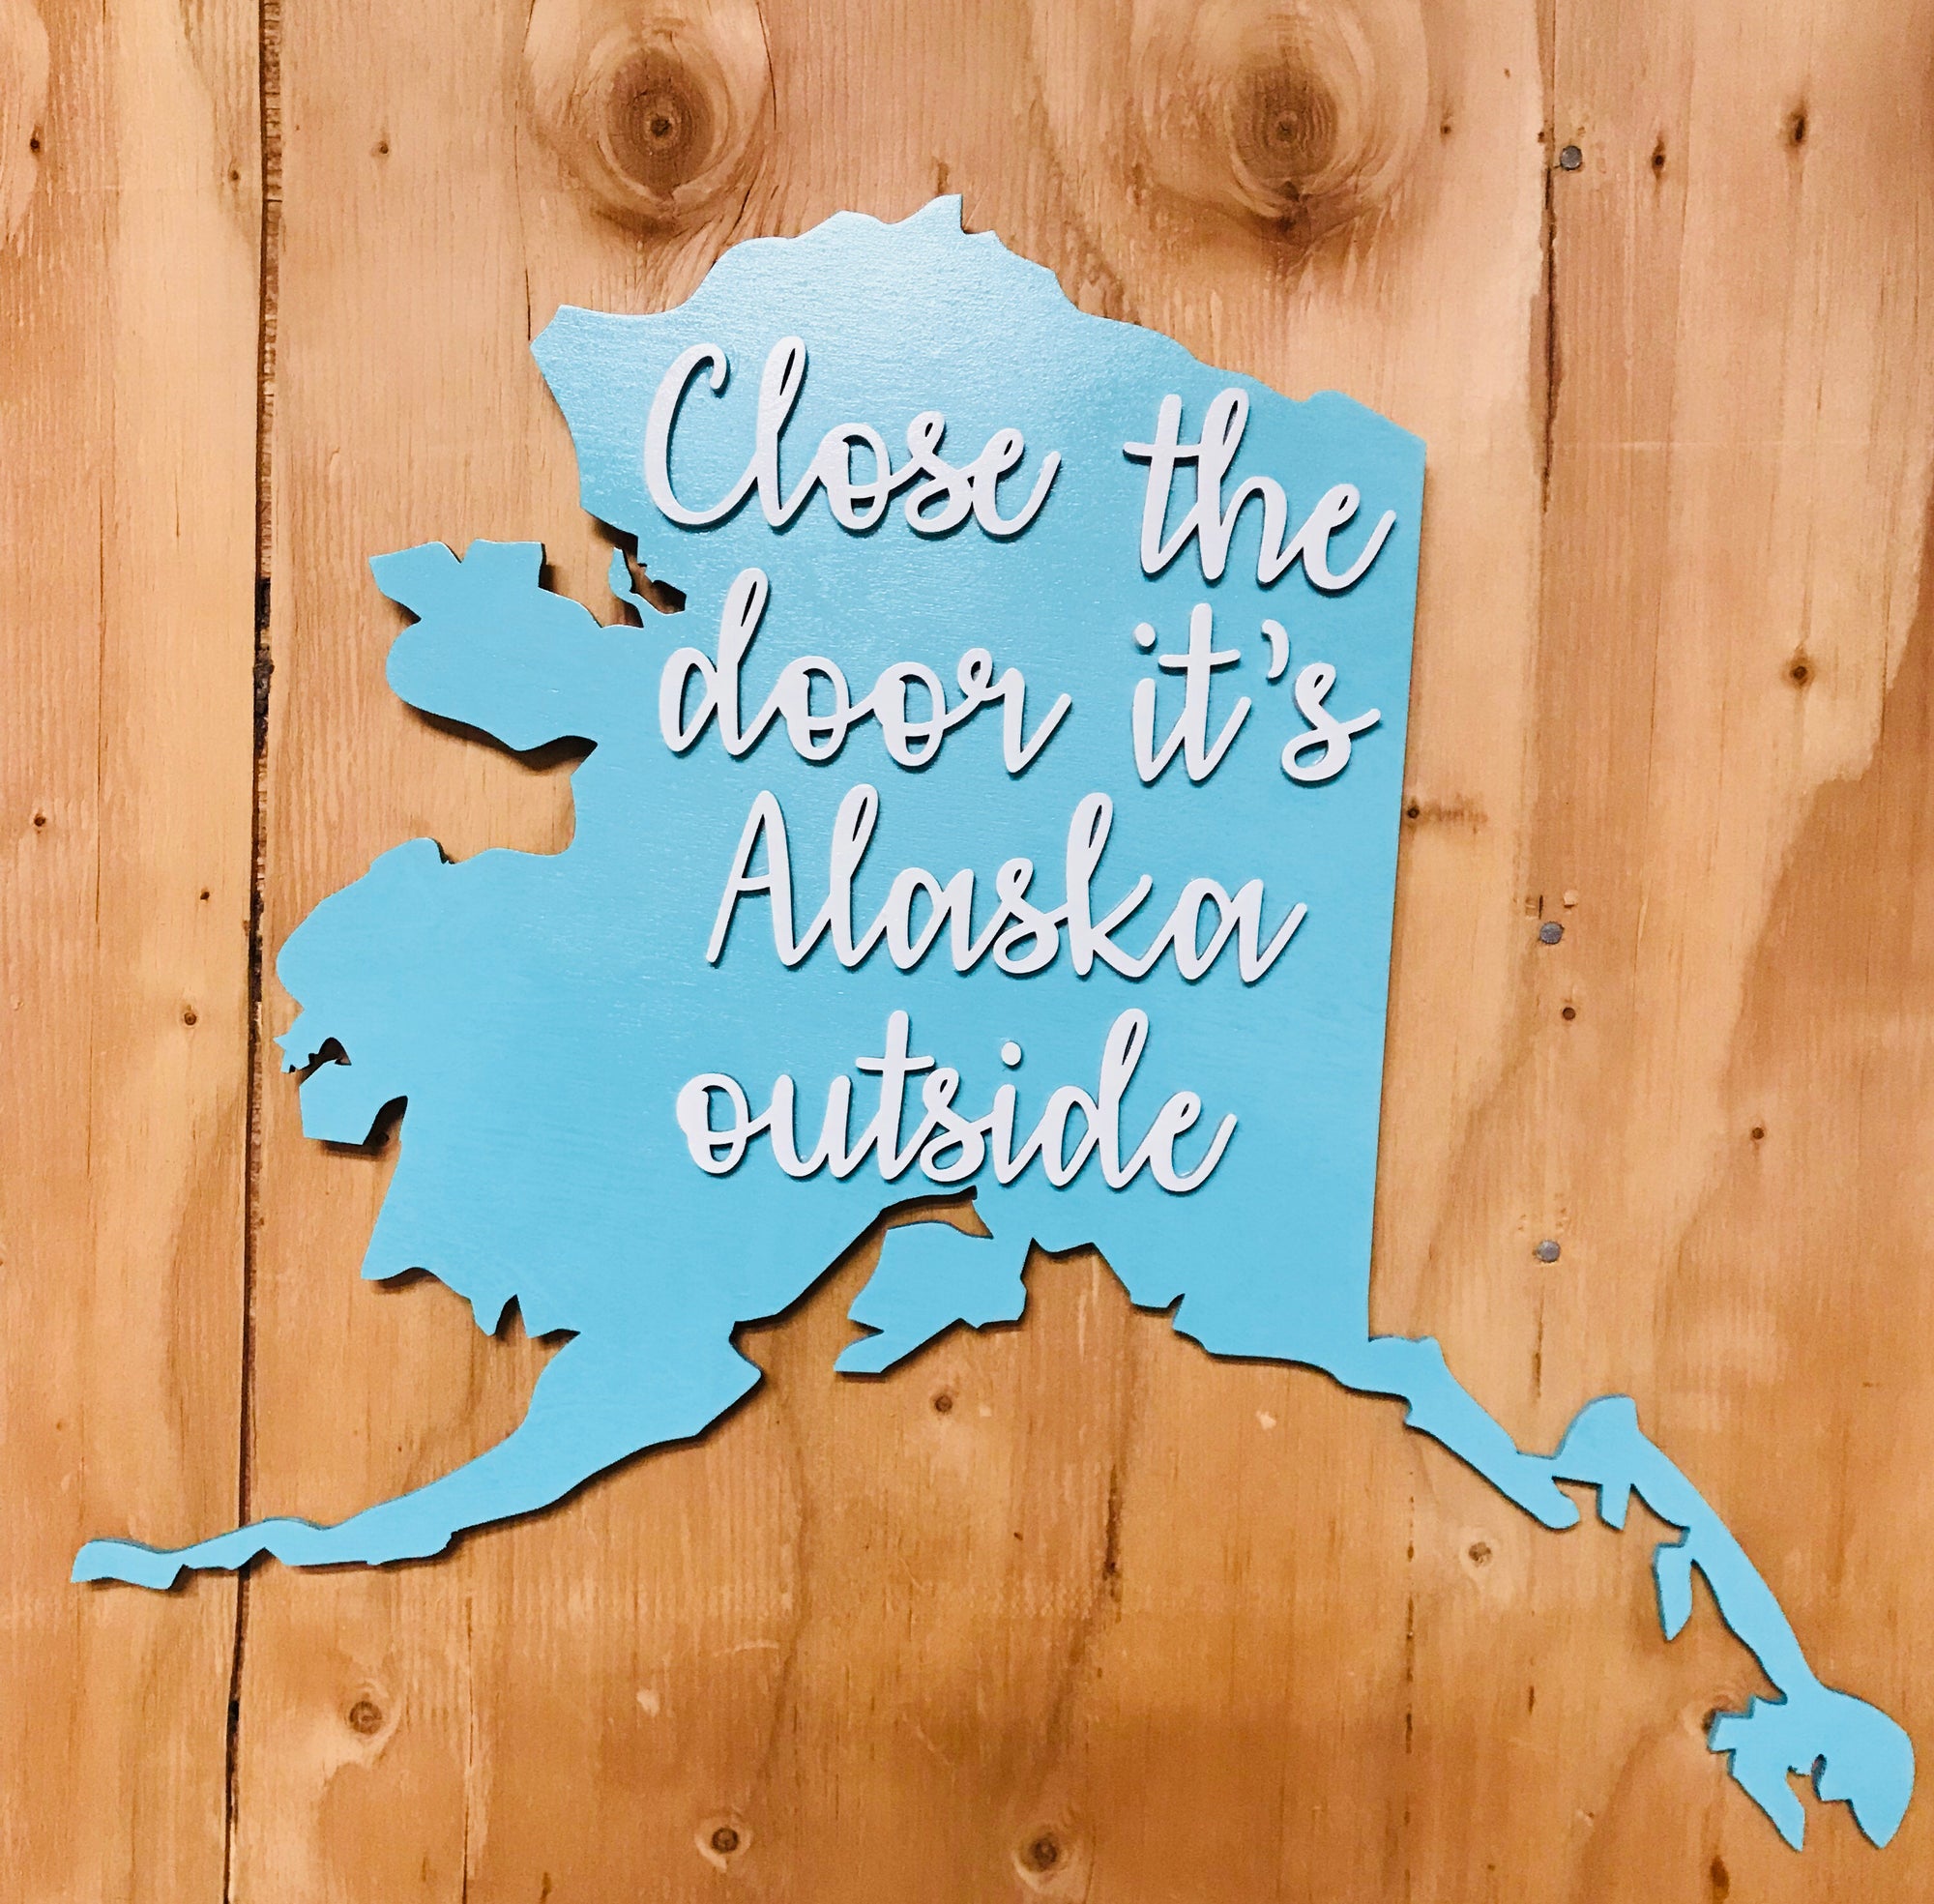 It’s Alaska outside